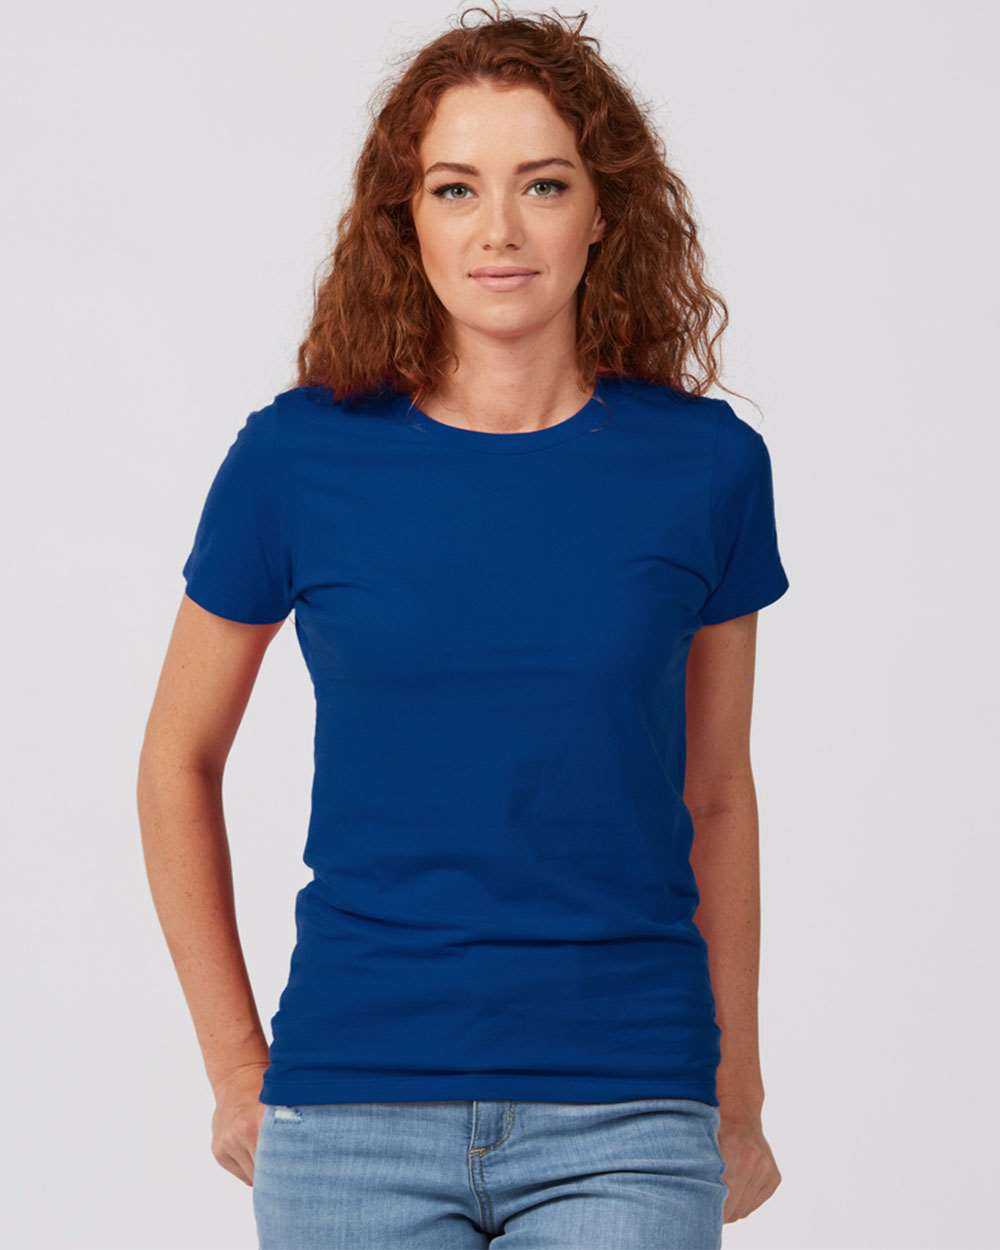 Tultex 516 Women&#39;s Premium Cotton T-Shirt - Royal - HIT a Double